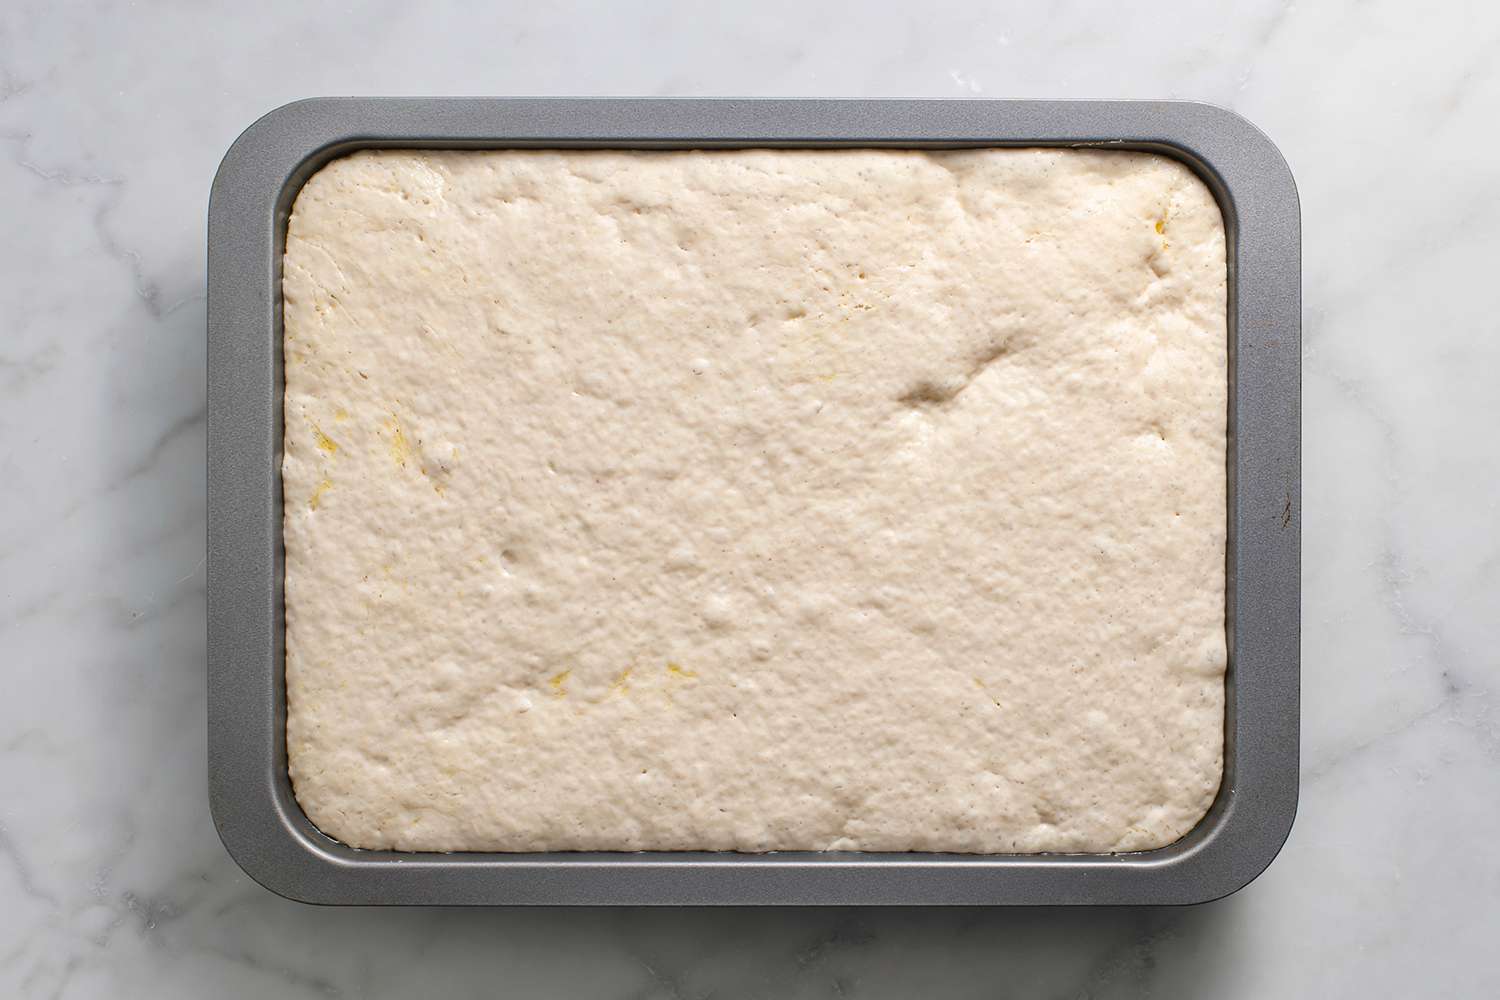 Focaccia dough rising in a baking pan